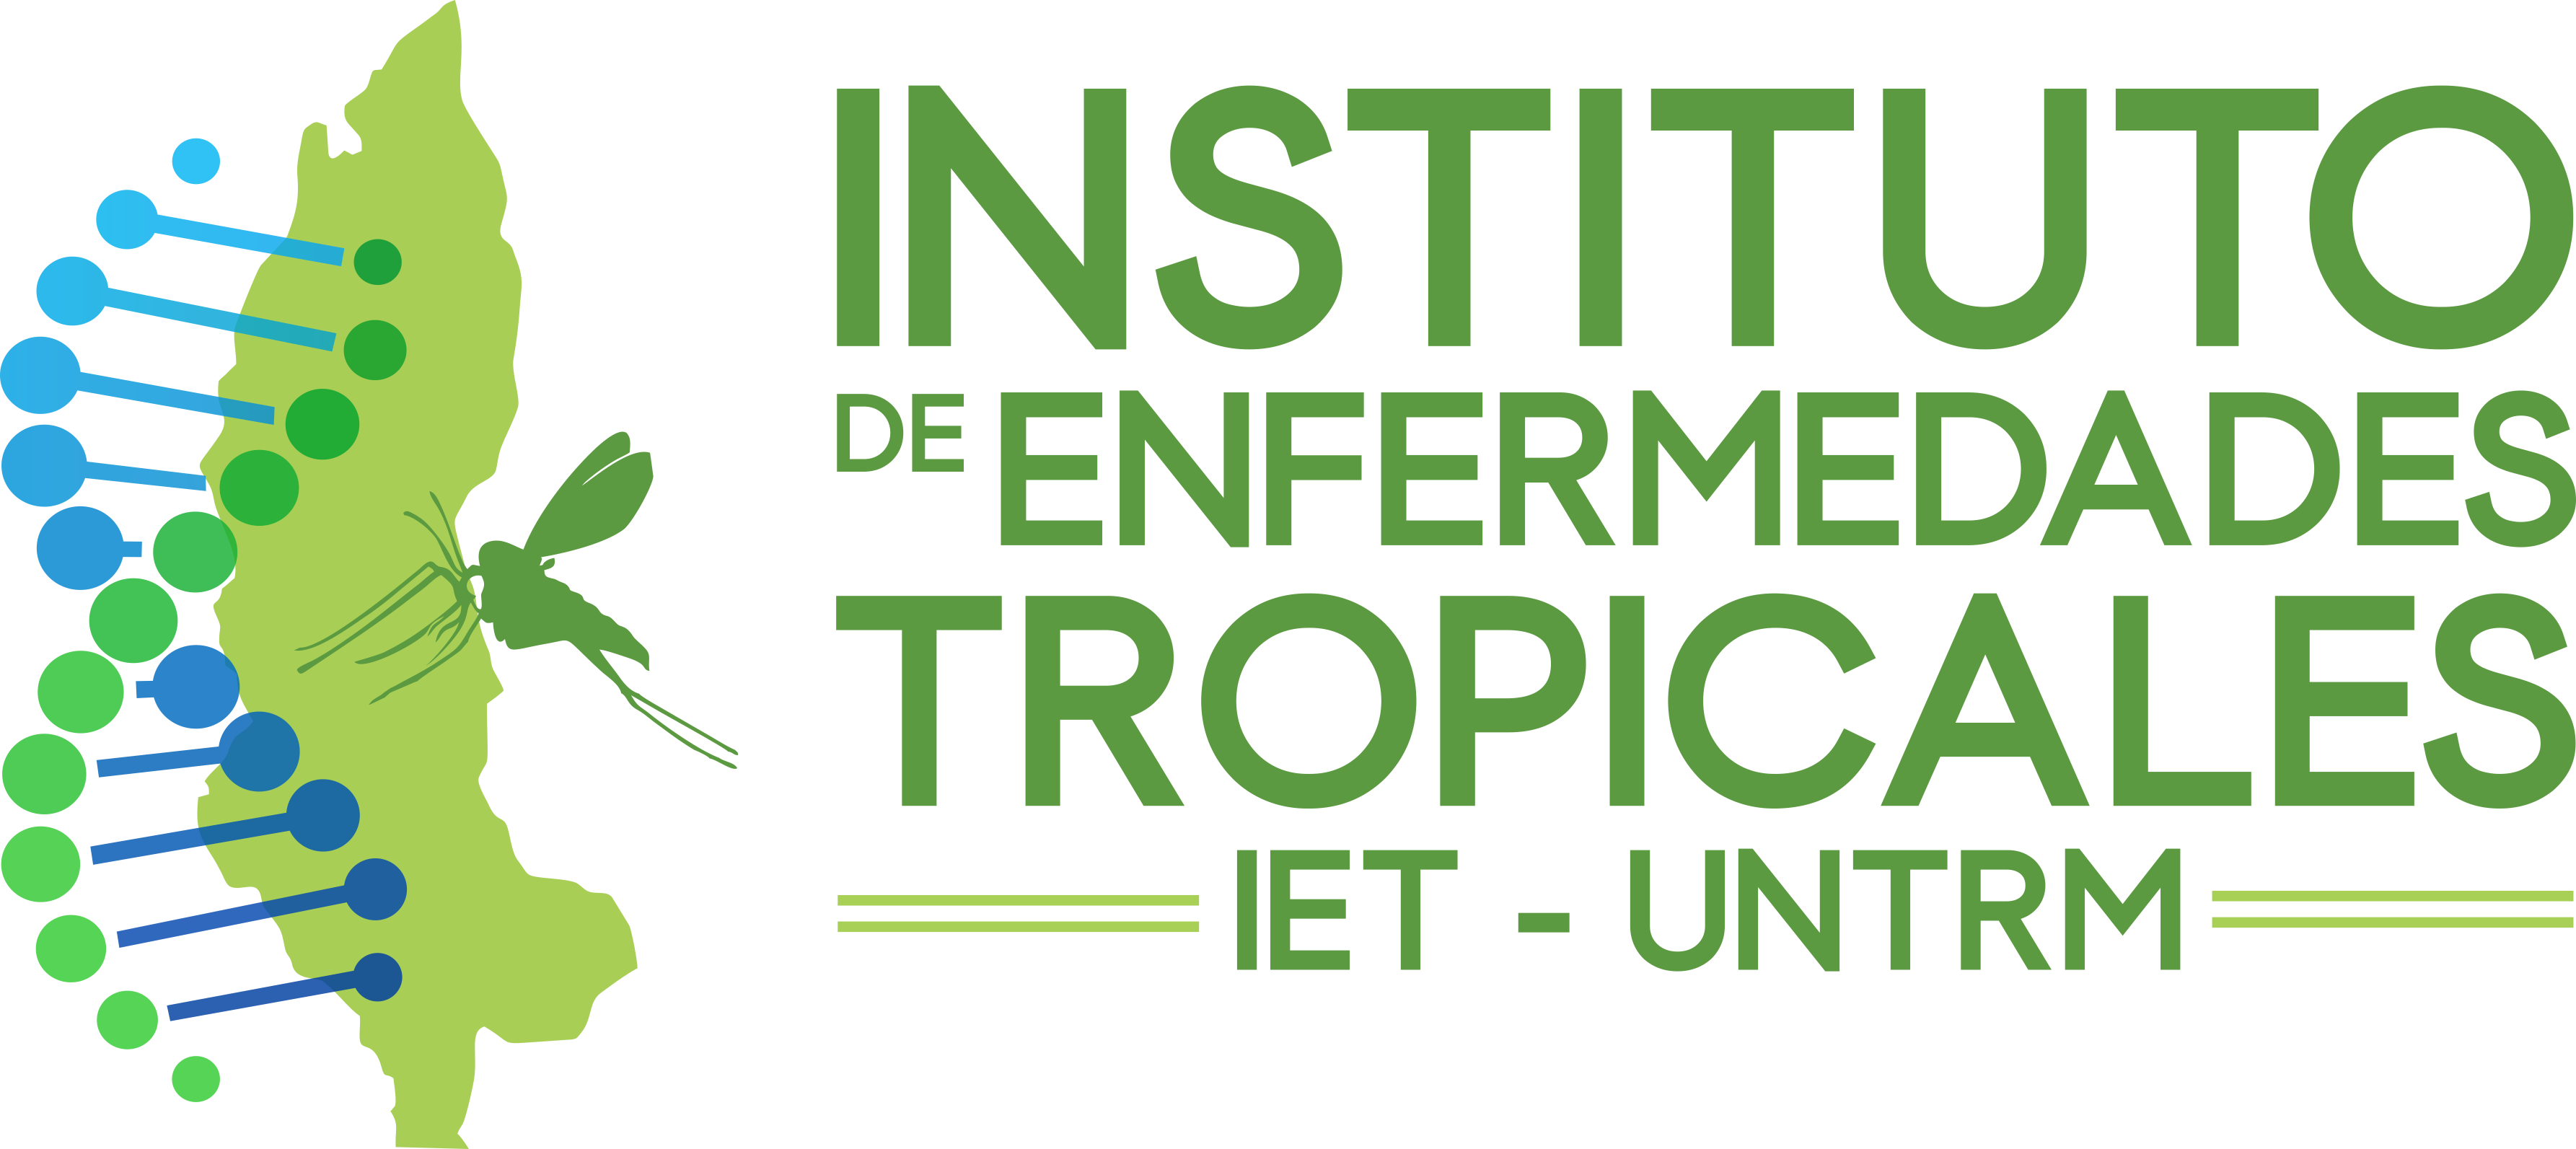 Instituto de Enfermedades Tropicales UNTRM